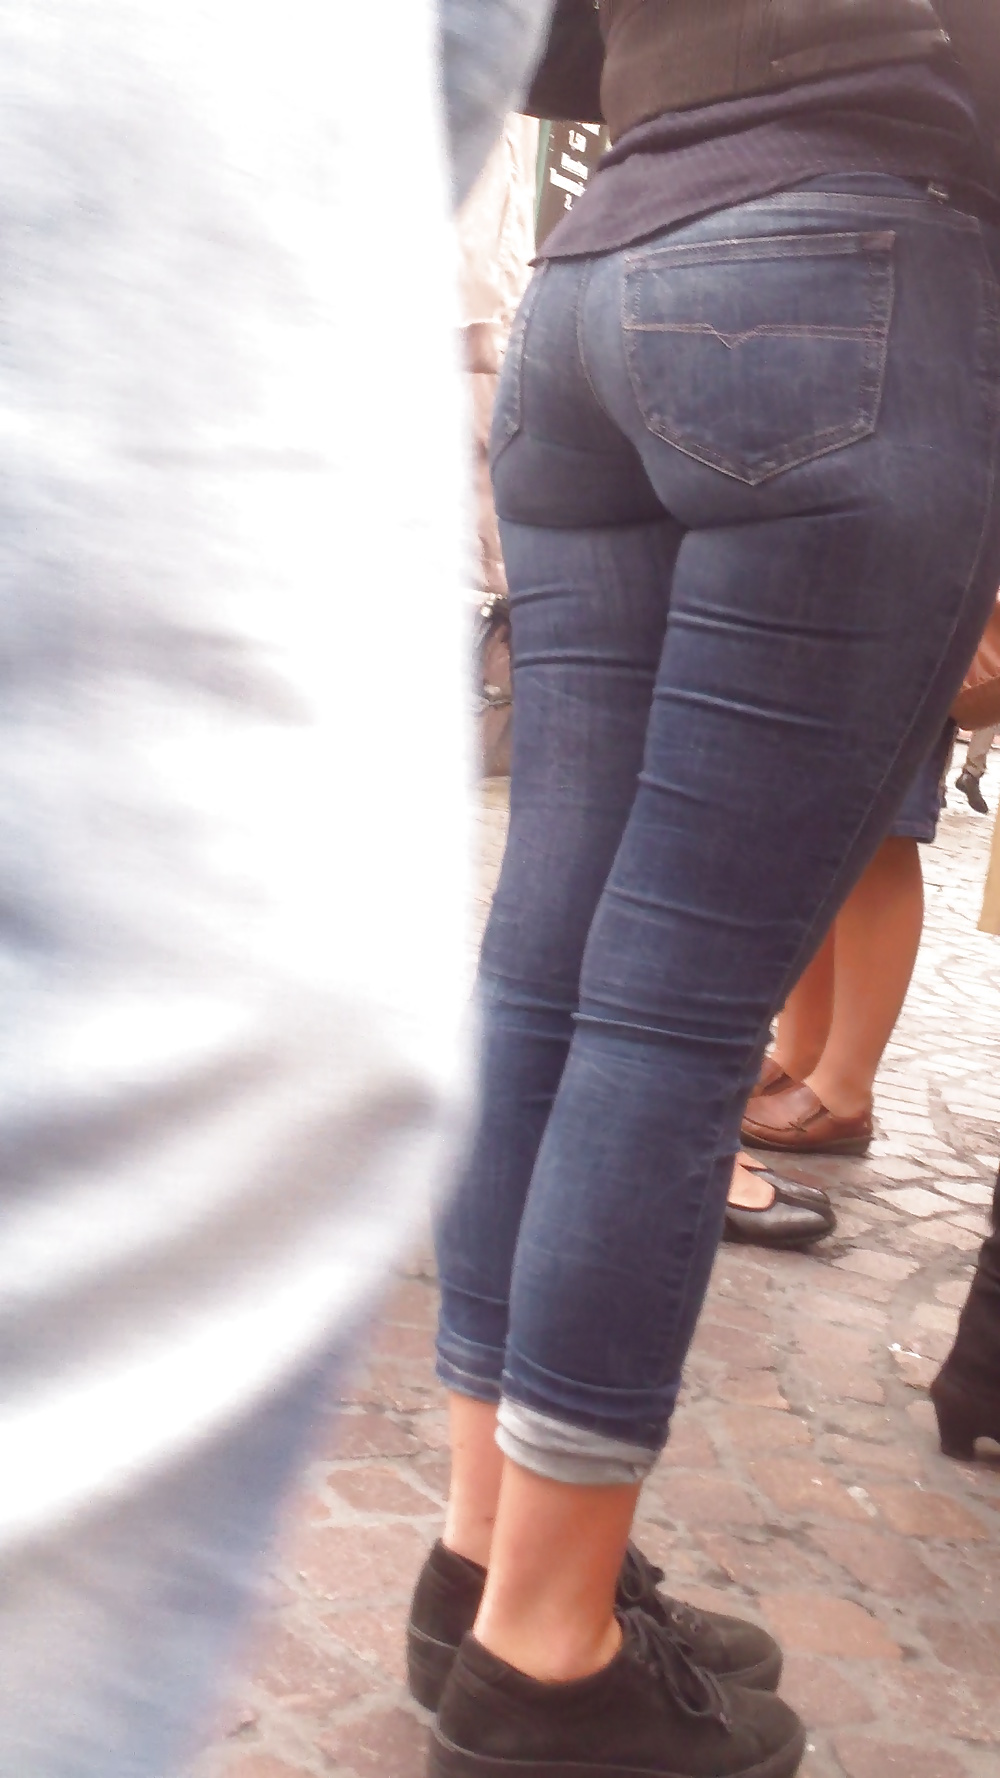 Popular teen girls ass & butt in jeans Part 6 #32010440